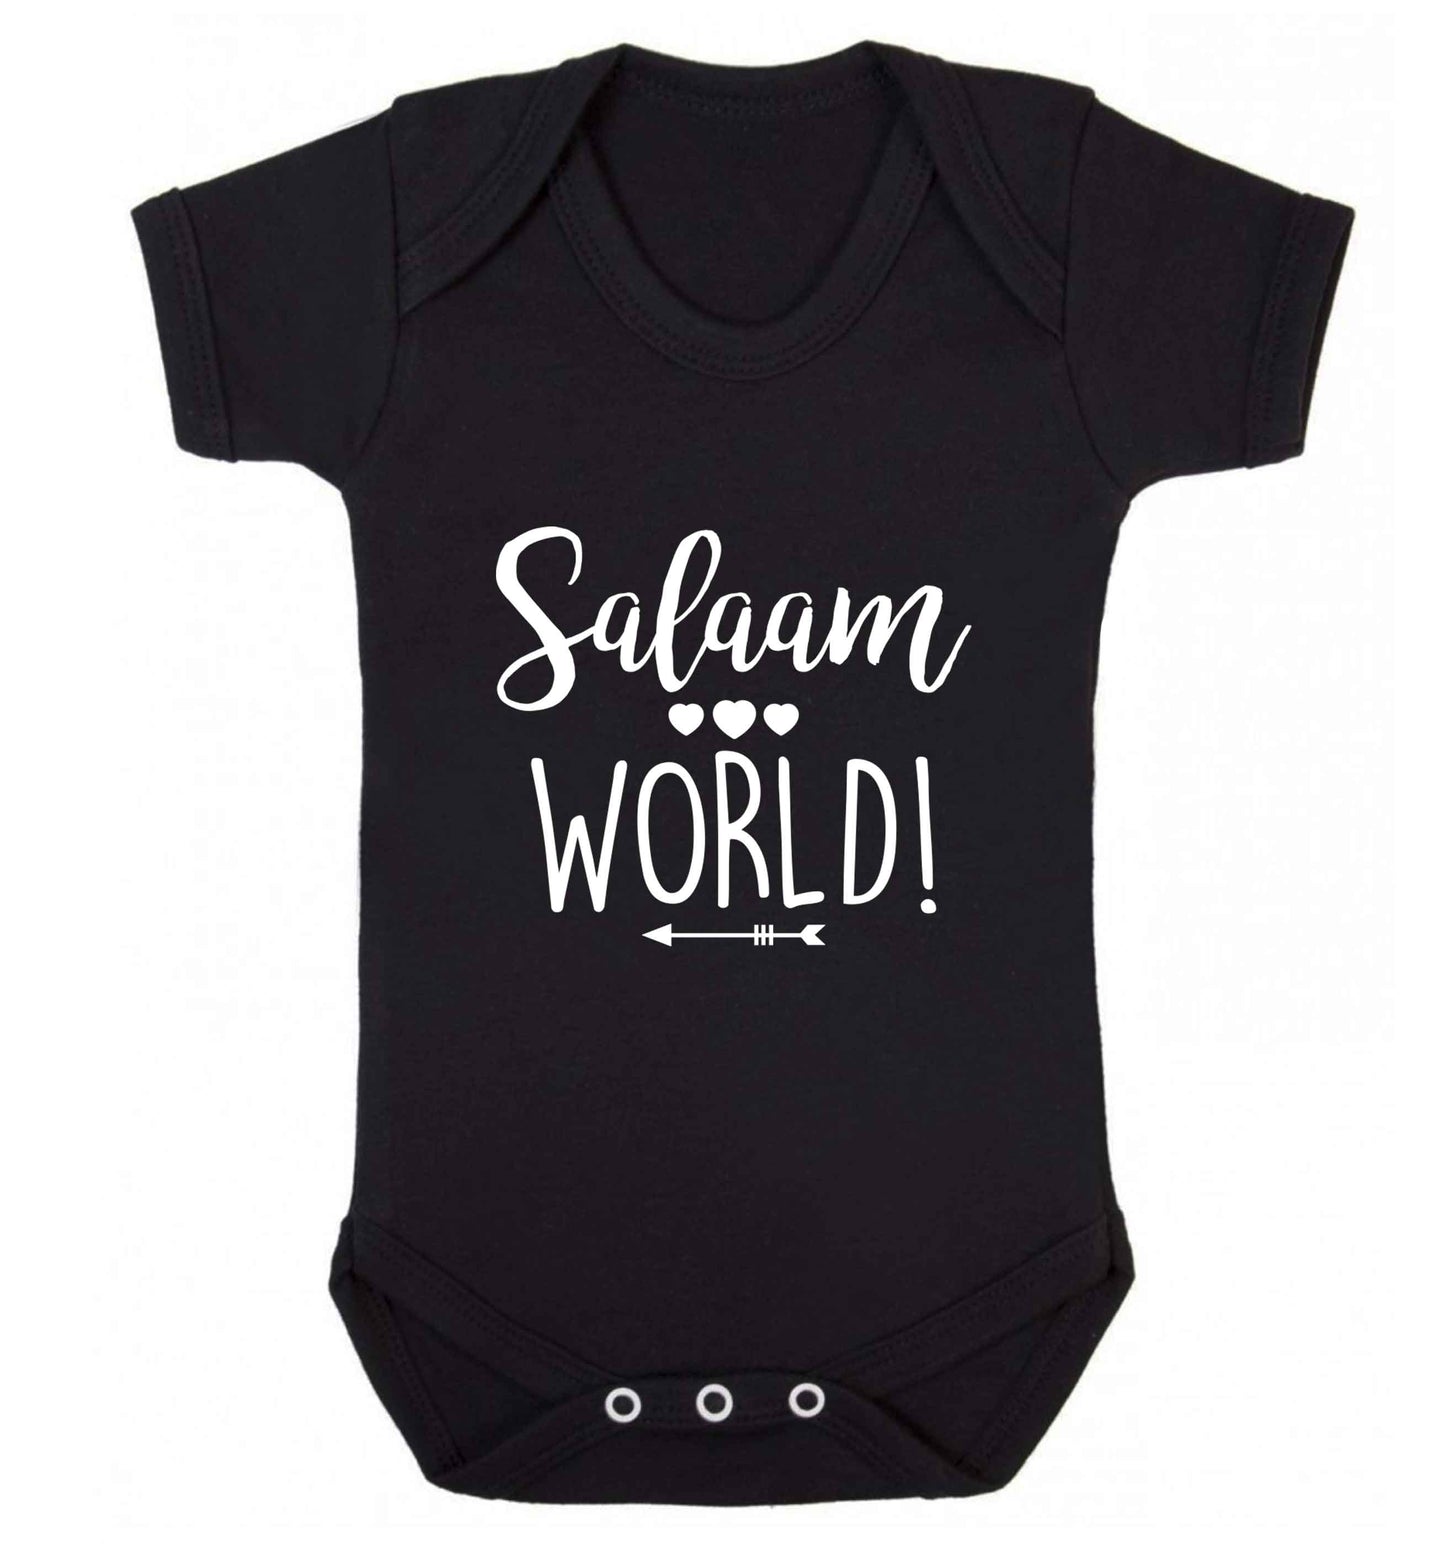 Salaam world baby vest black 18-24 months